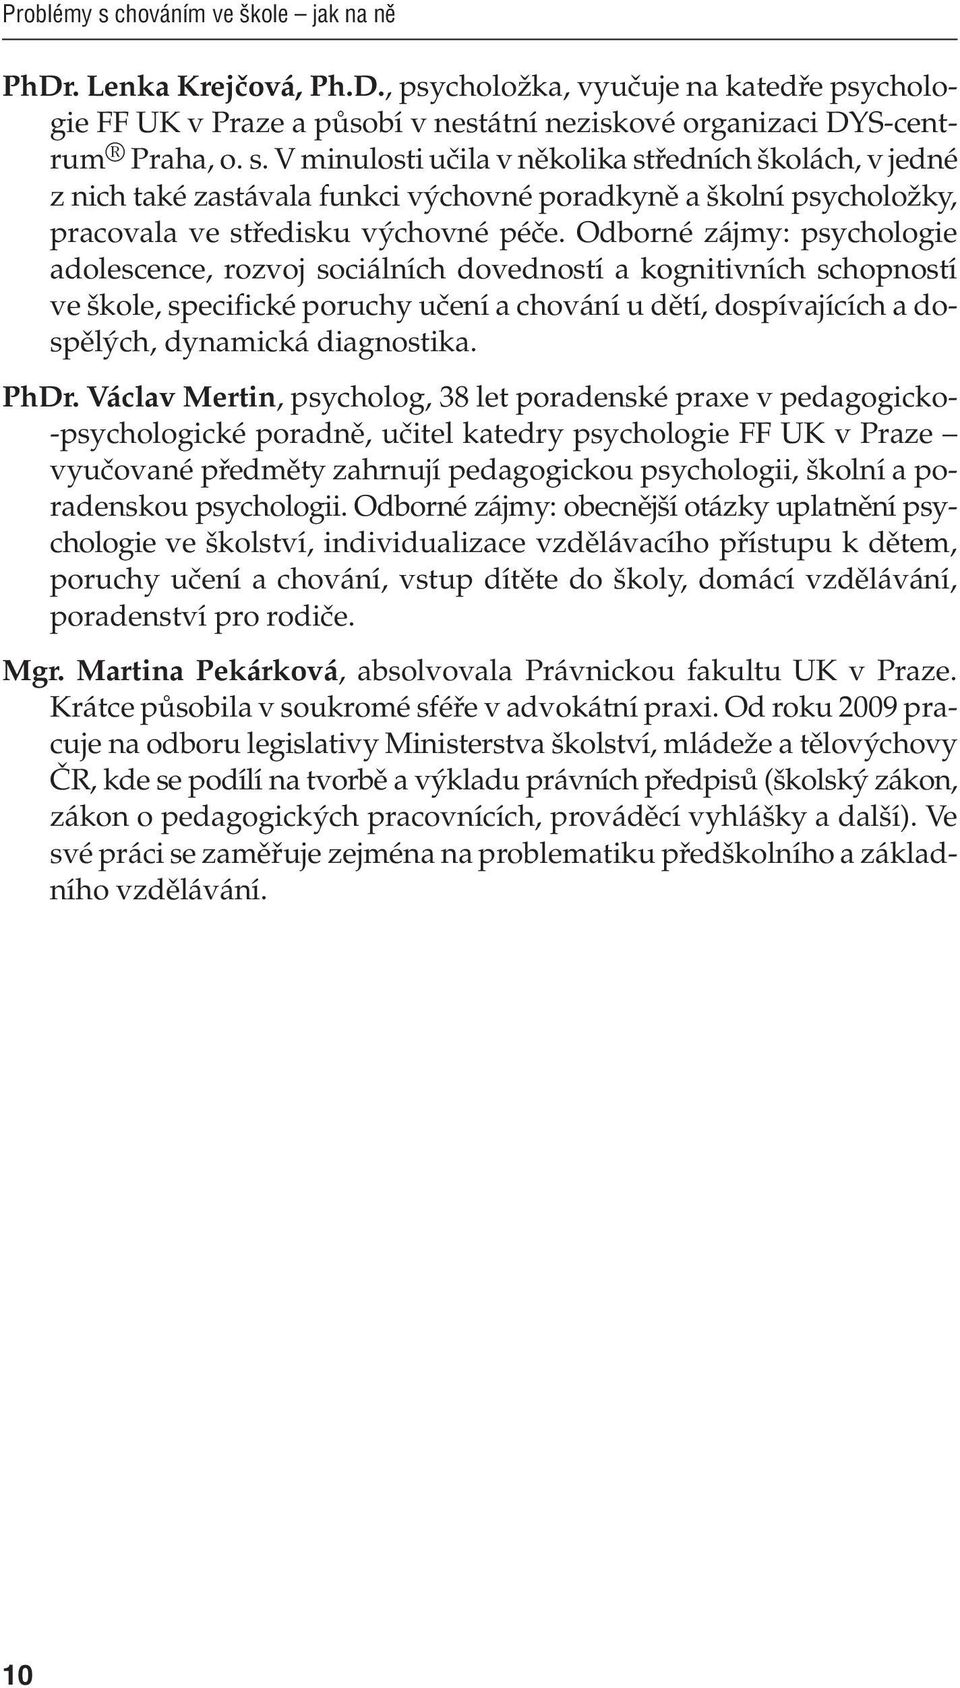 PhDr. Václav Mertin, psycholog, 38 let poradenské praxe v pedagogicko- -psychologické poradně, učitel katedry psychologie FF UK v Praze vyučované předměty zahrnují pedagogickou psychologii, školní a